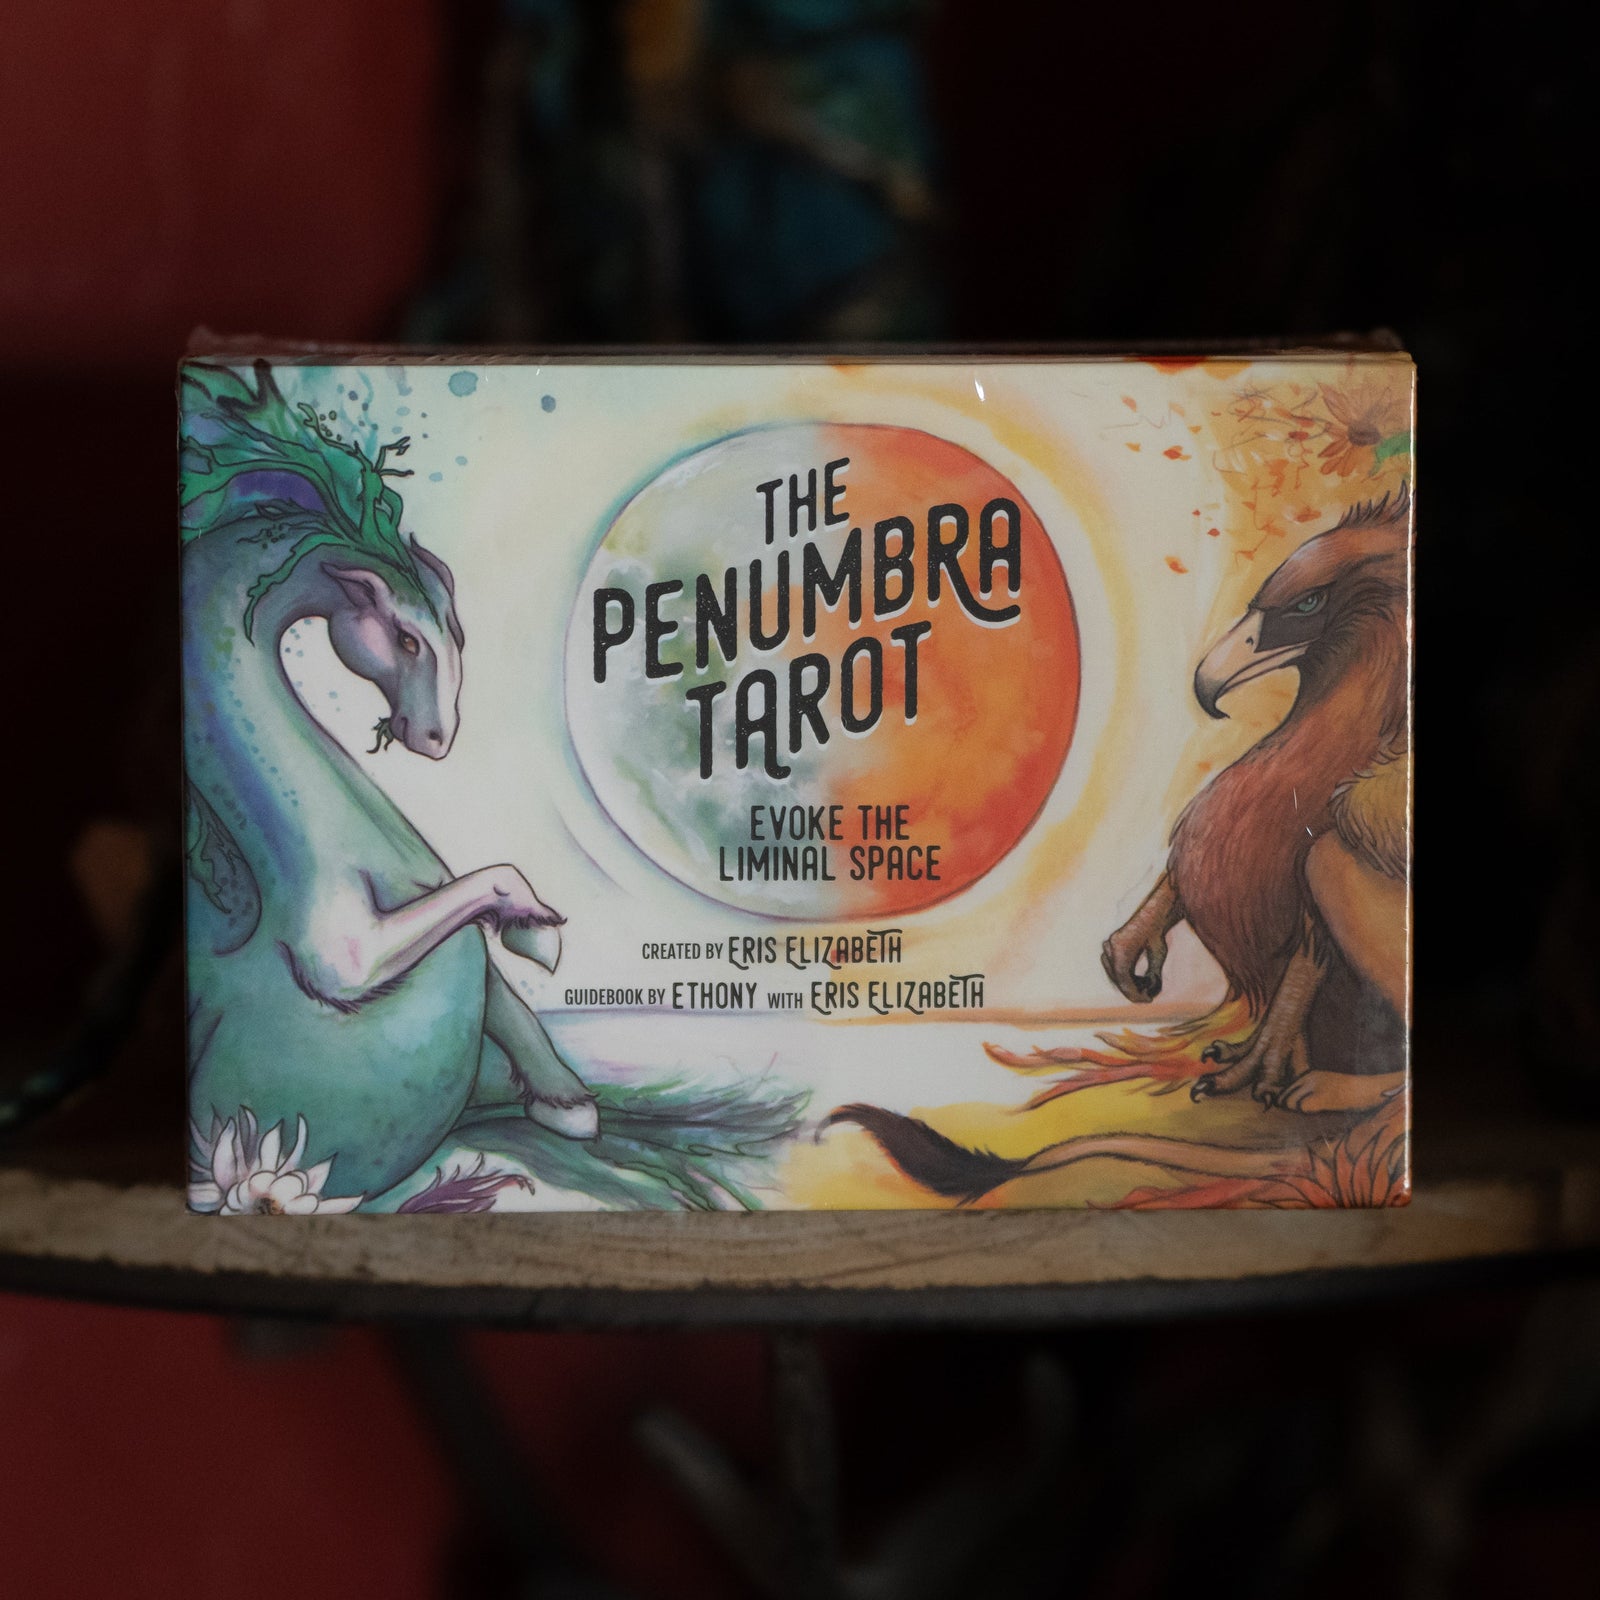 The Penumbra Tarot